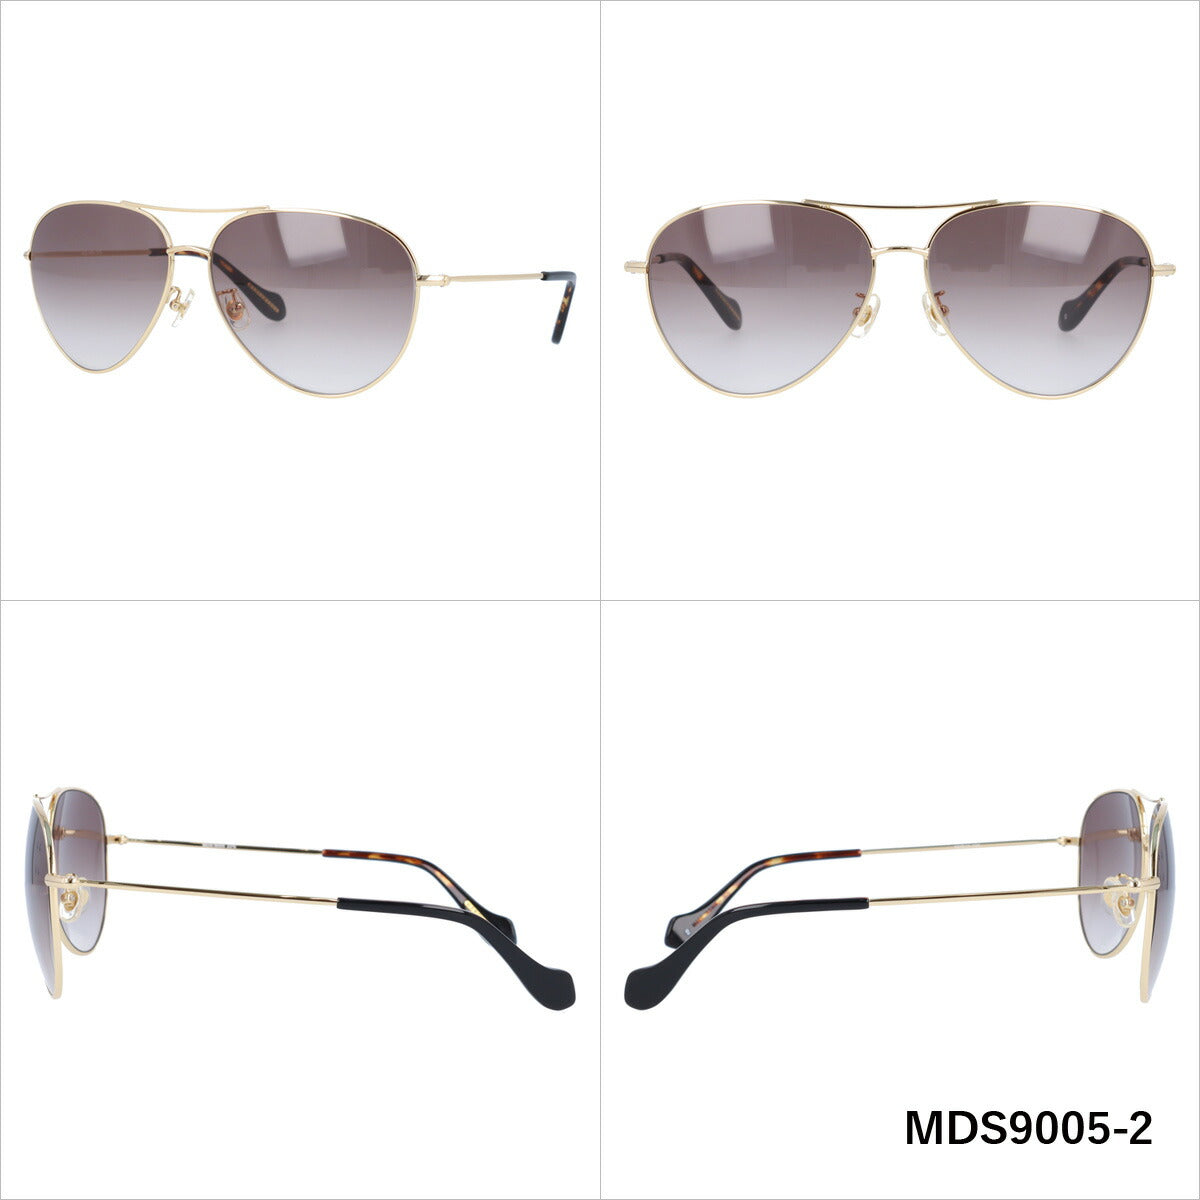 レディース サングラス MERCURYDUO マーキュリーデュオ MDS 9005 全3色 59サイズ アジアンフィット 女性 UVカット 紫外線 対策 ブランド 眼鏡 メガネ アイウェア 人気 おすすめ ラッピング無料